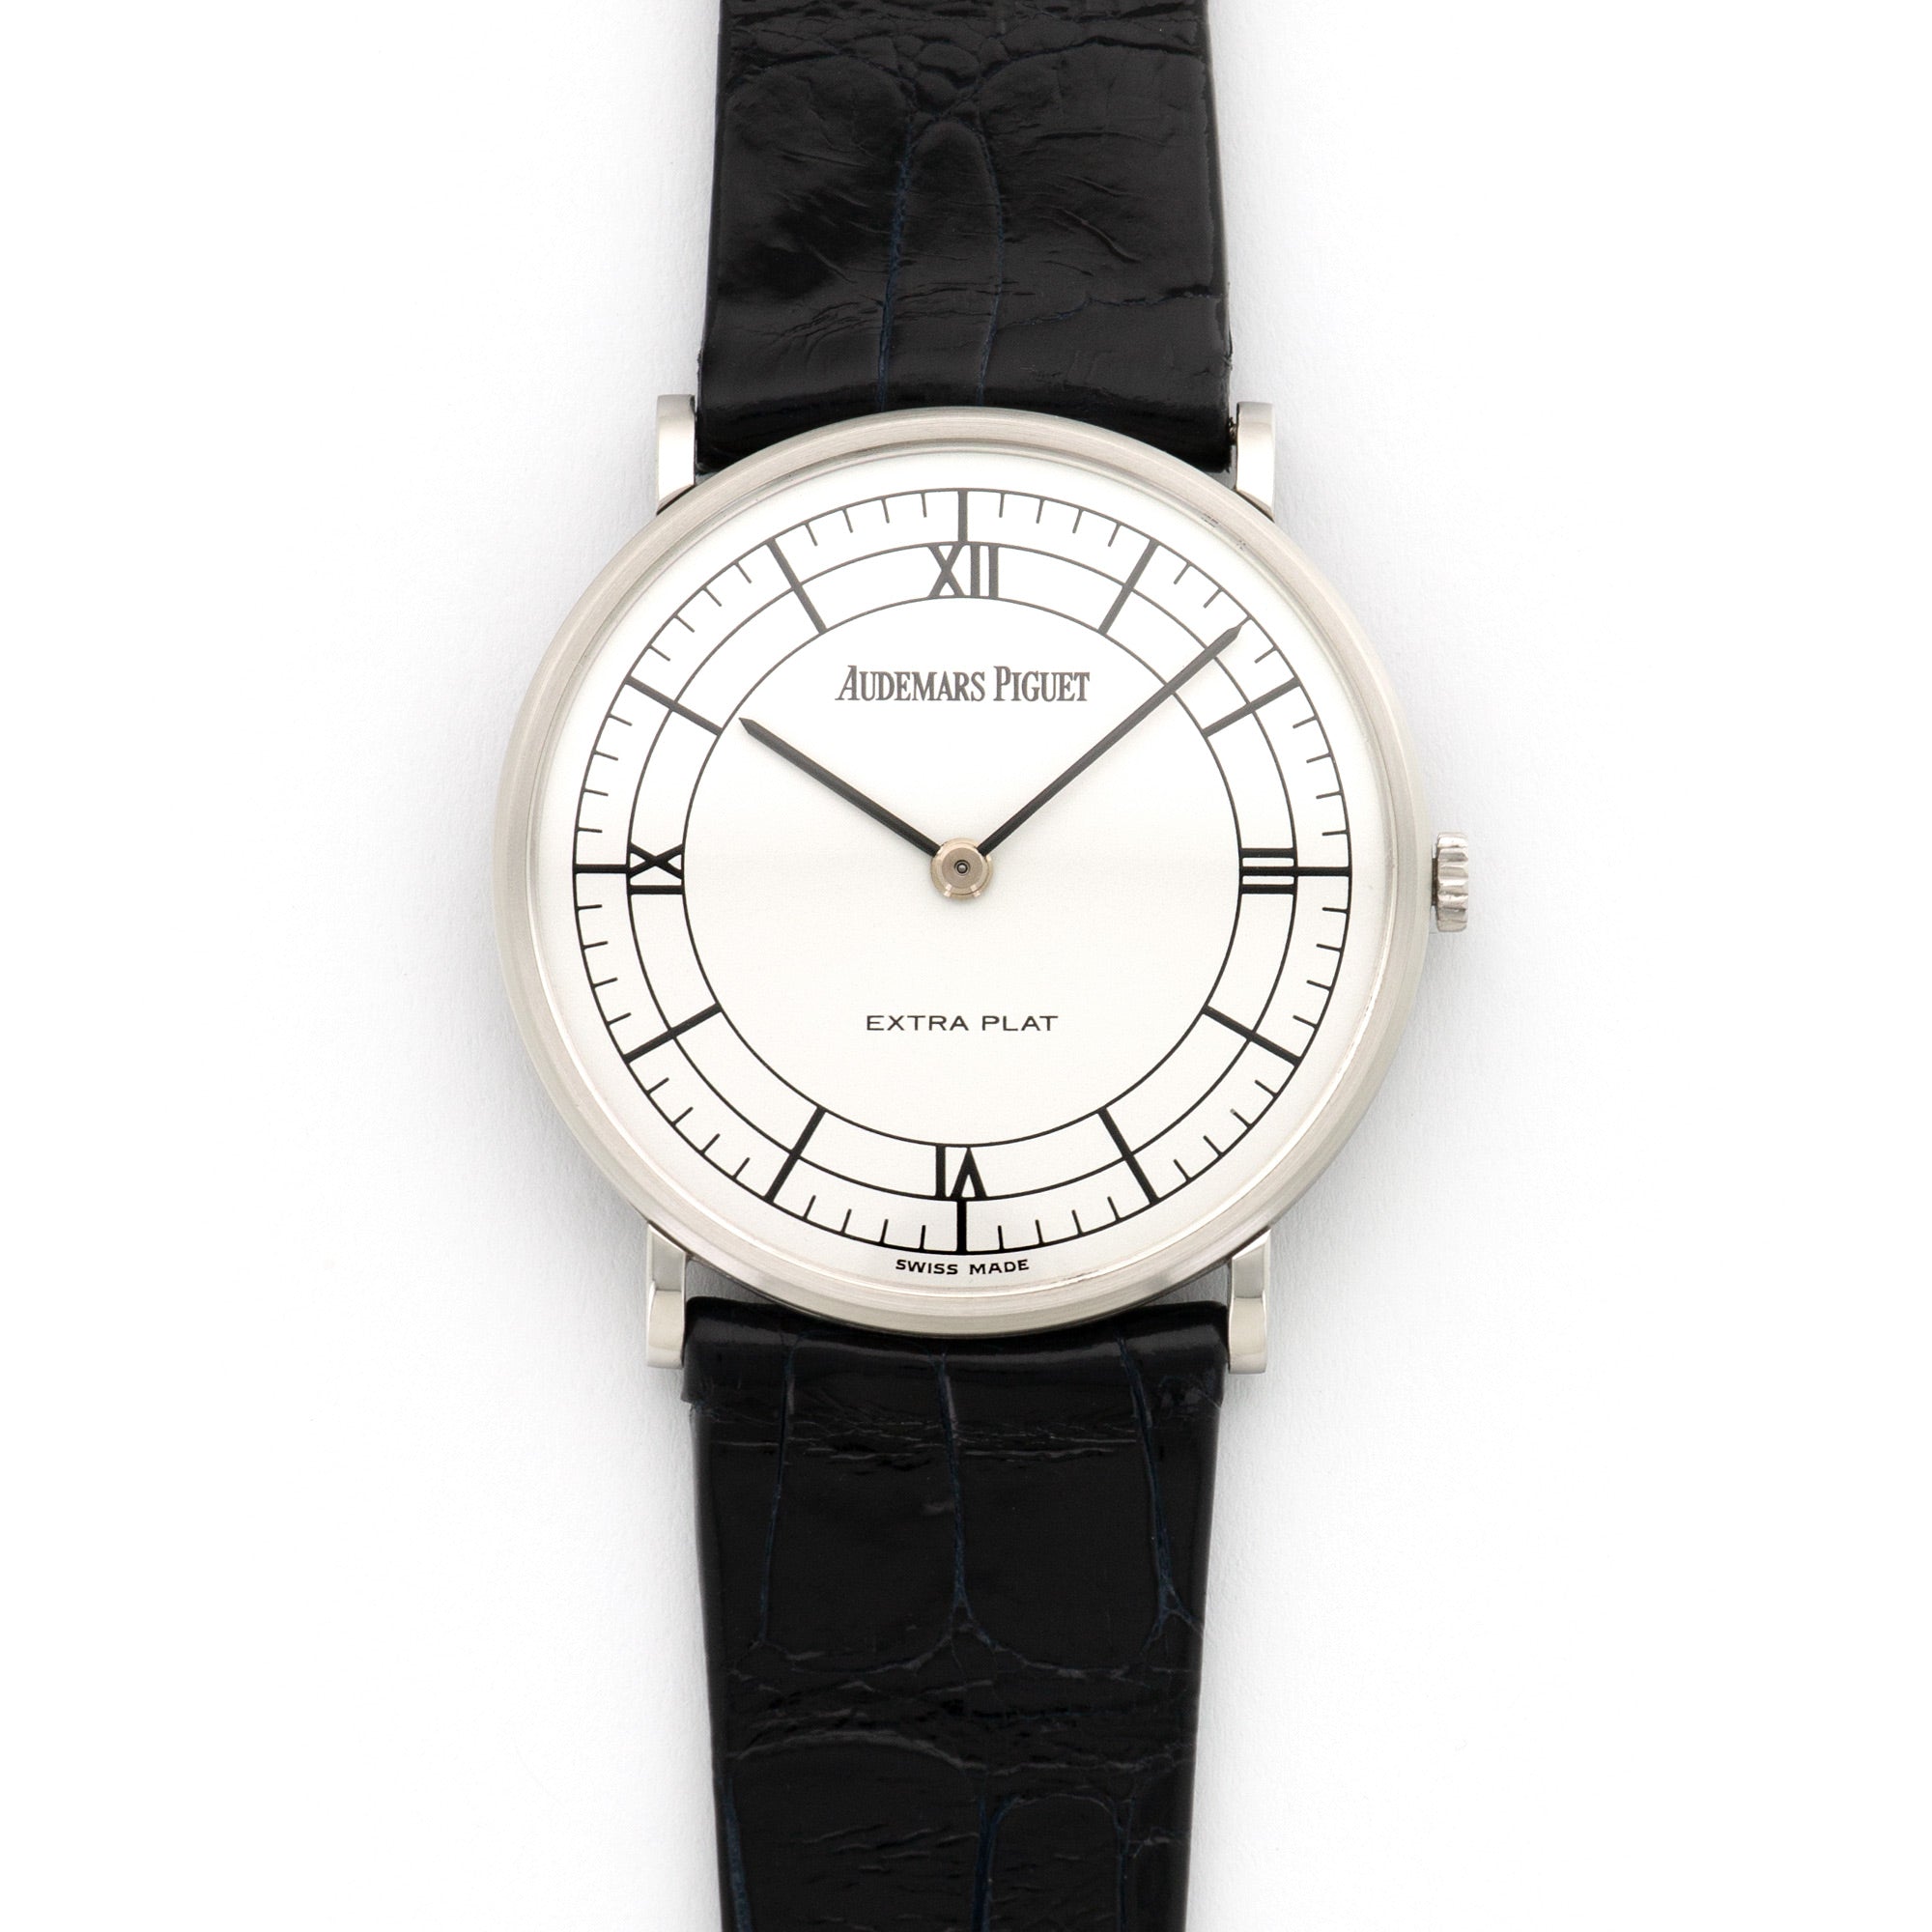 Audemars Piguet - Audemars Piguet Platinum Extra-Plat Ultra-Thin Watch - The Keystone Watches